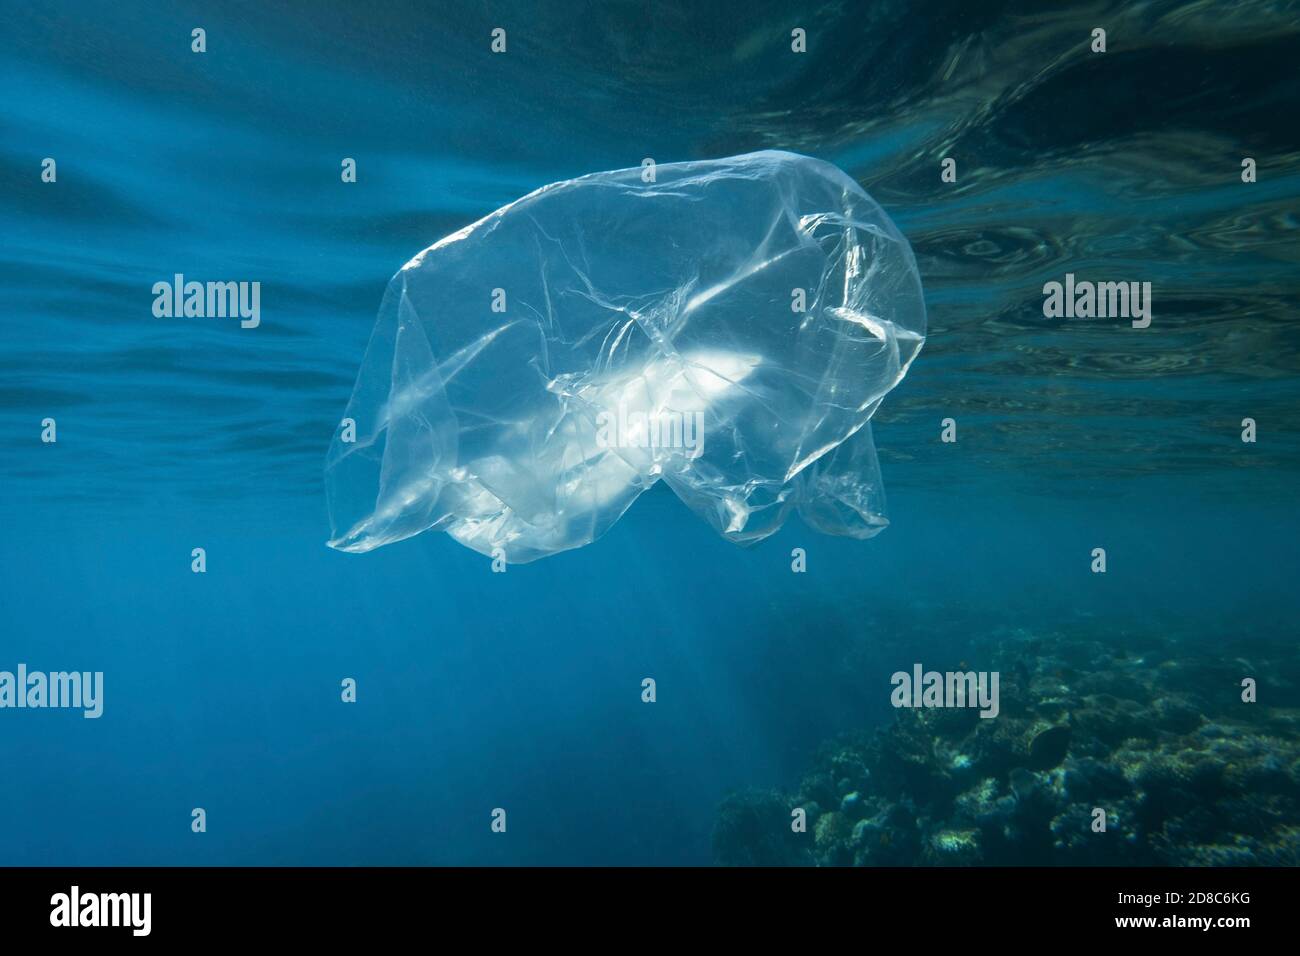 Gebrauchte transparente Plastiktüte langsam treiben unter Wasser über Korallenriff in der Sonne Lichter. Plastikmüll unter Wasser. Plastikmüll Umwelt po Stockfoto